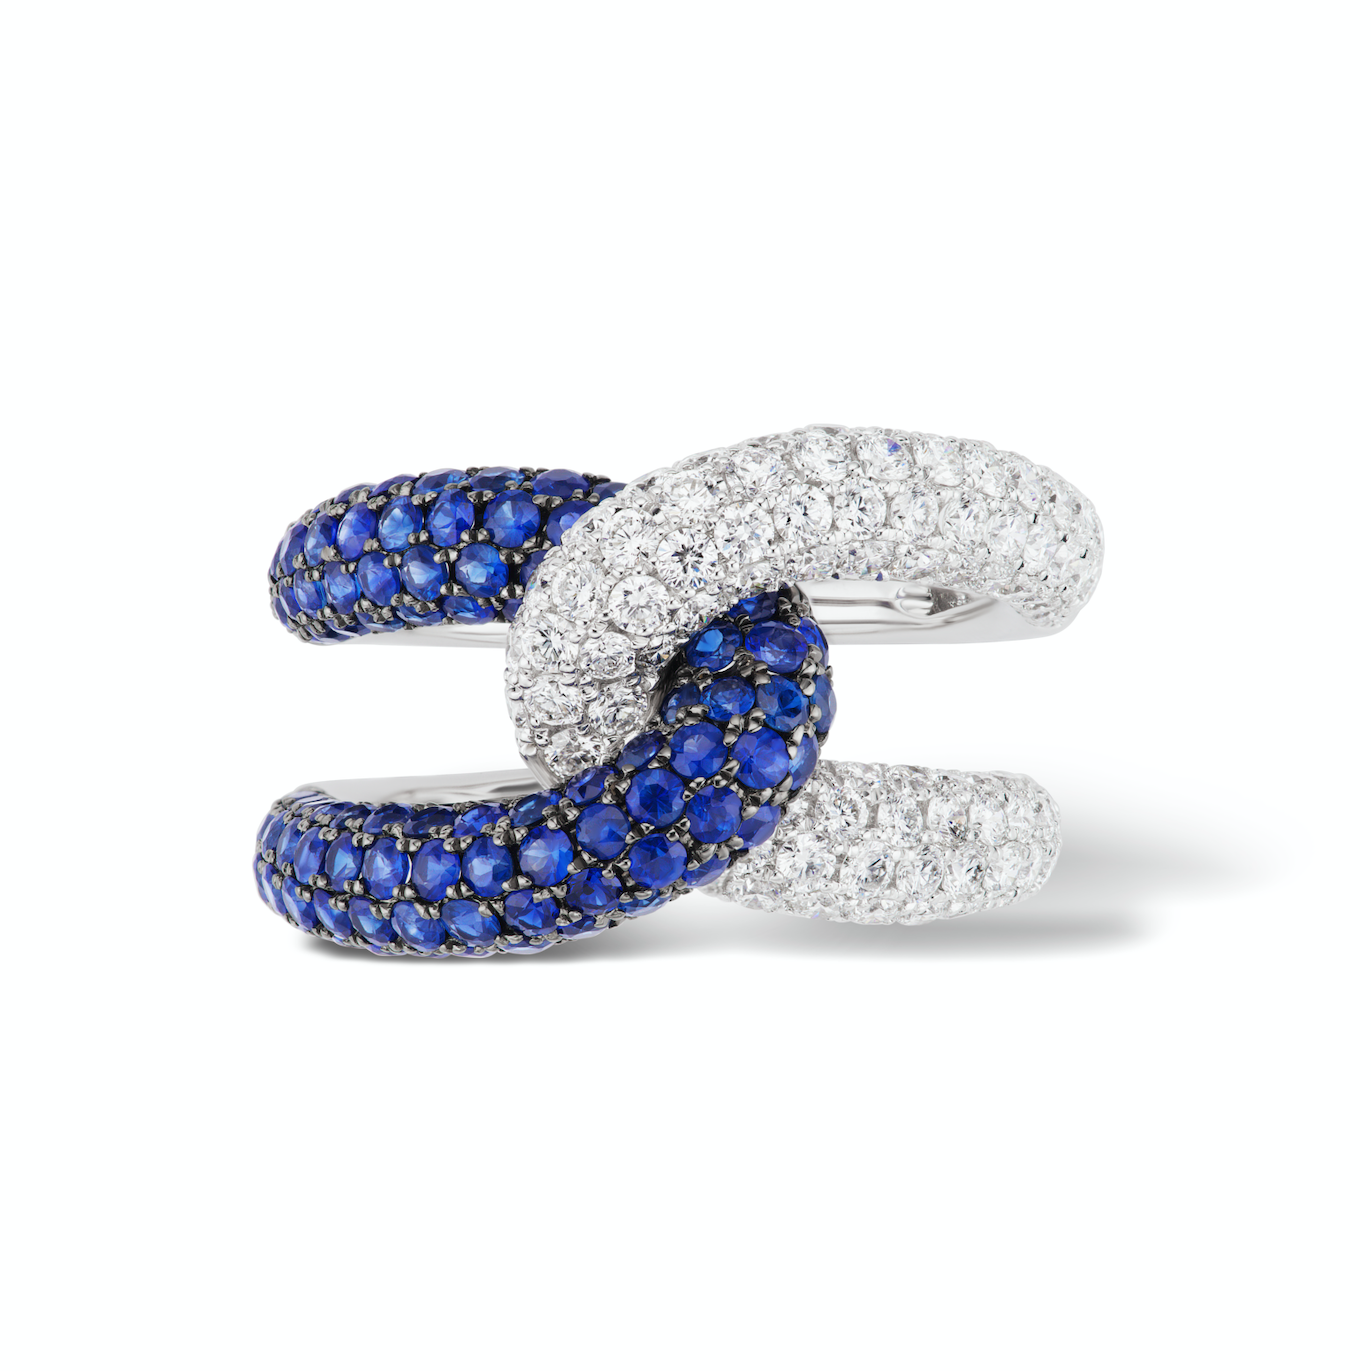 Mini Diamond Star Ring  Stephanie Moustakas Fine Jewelry